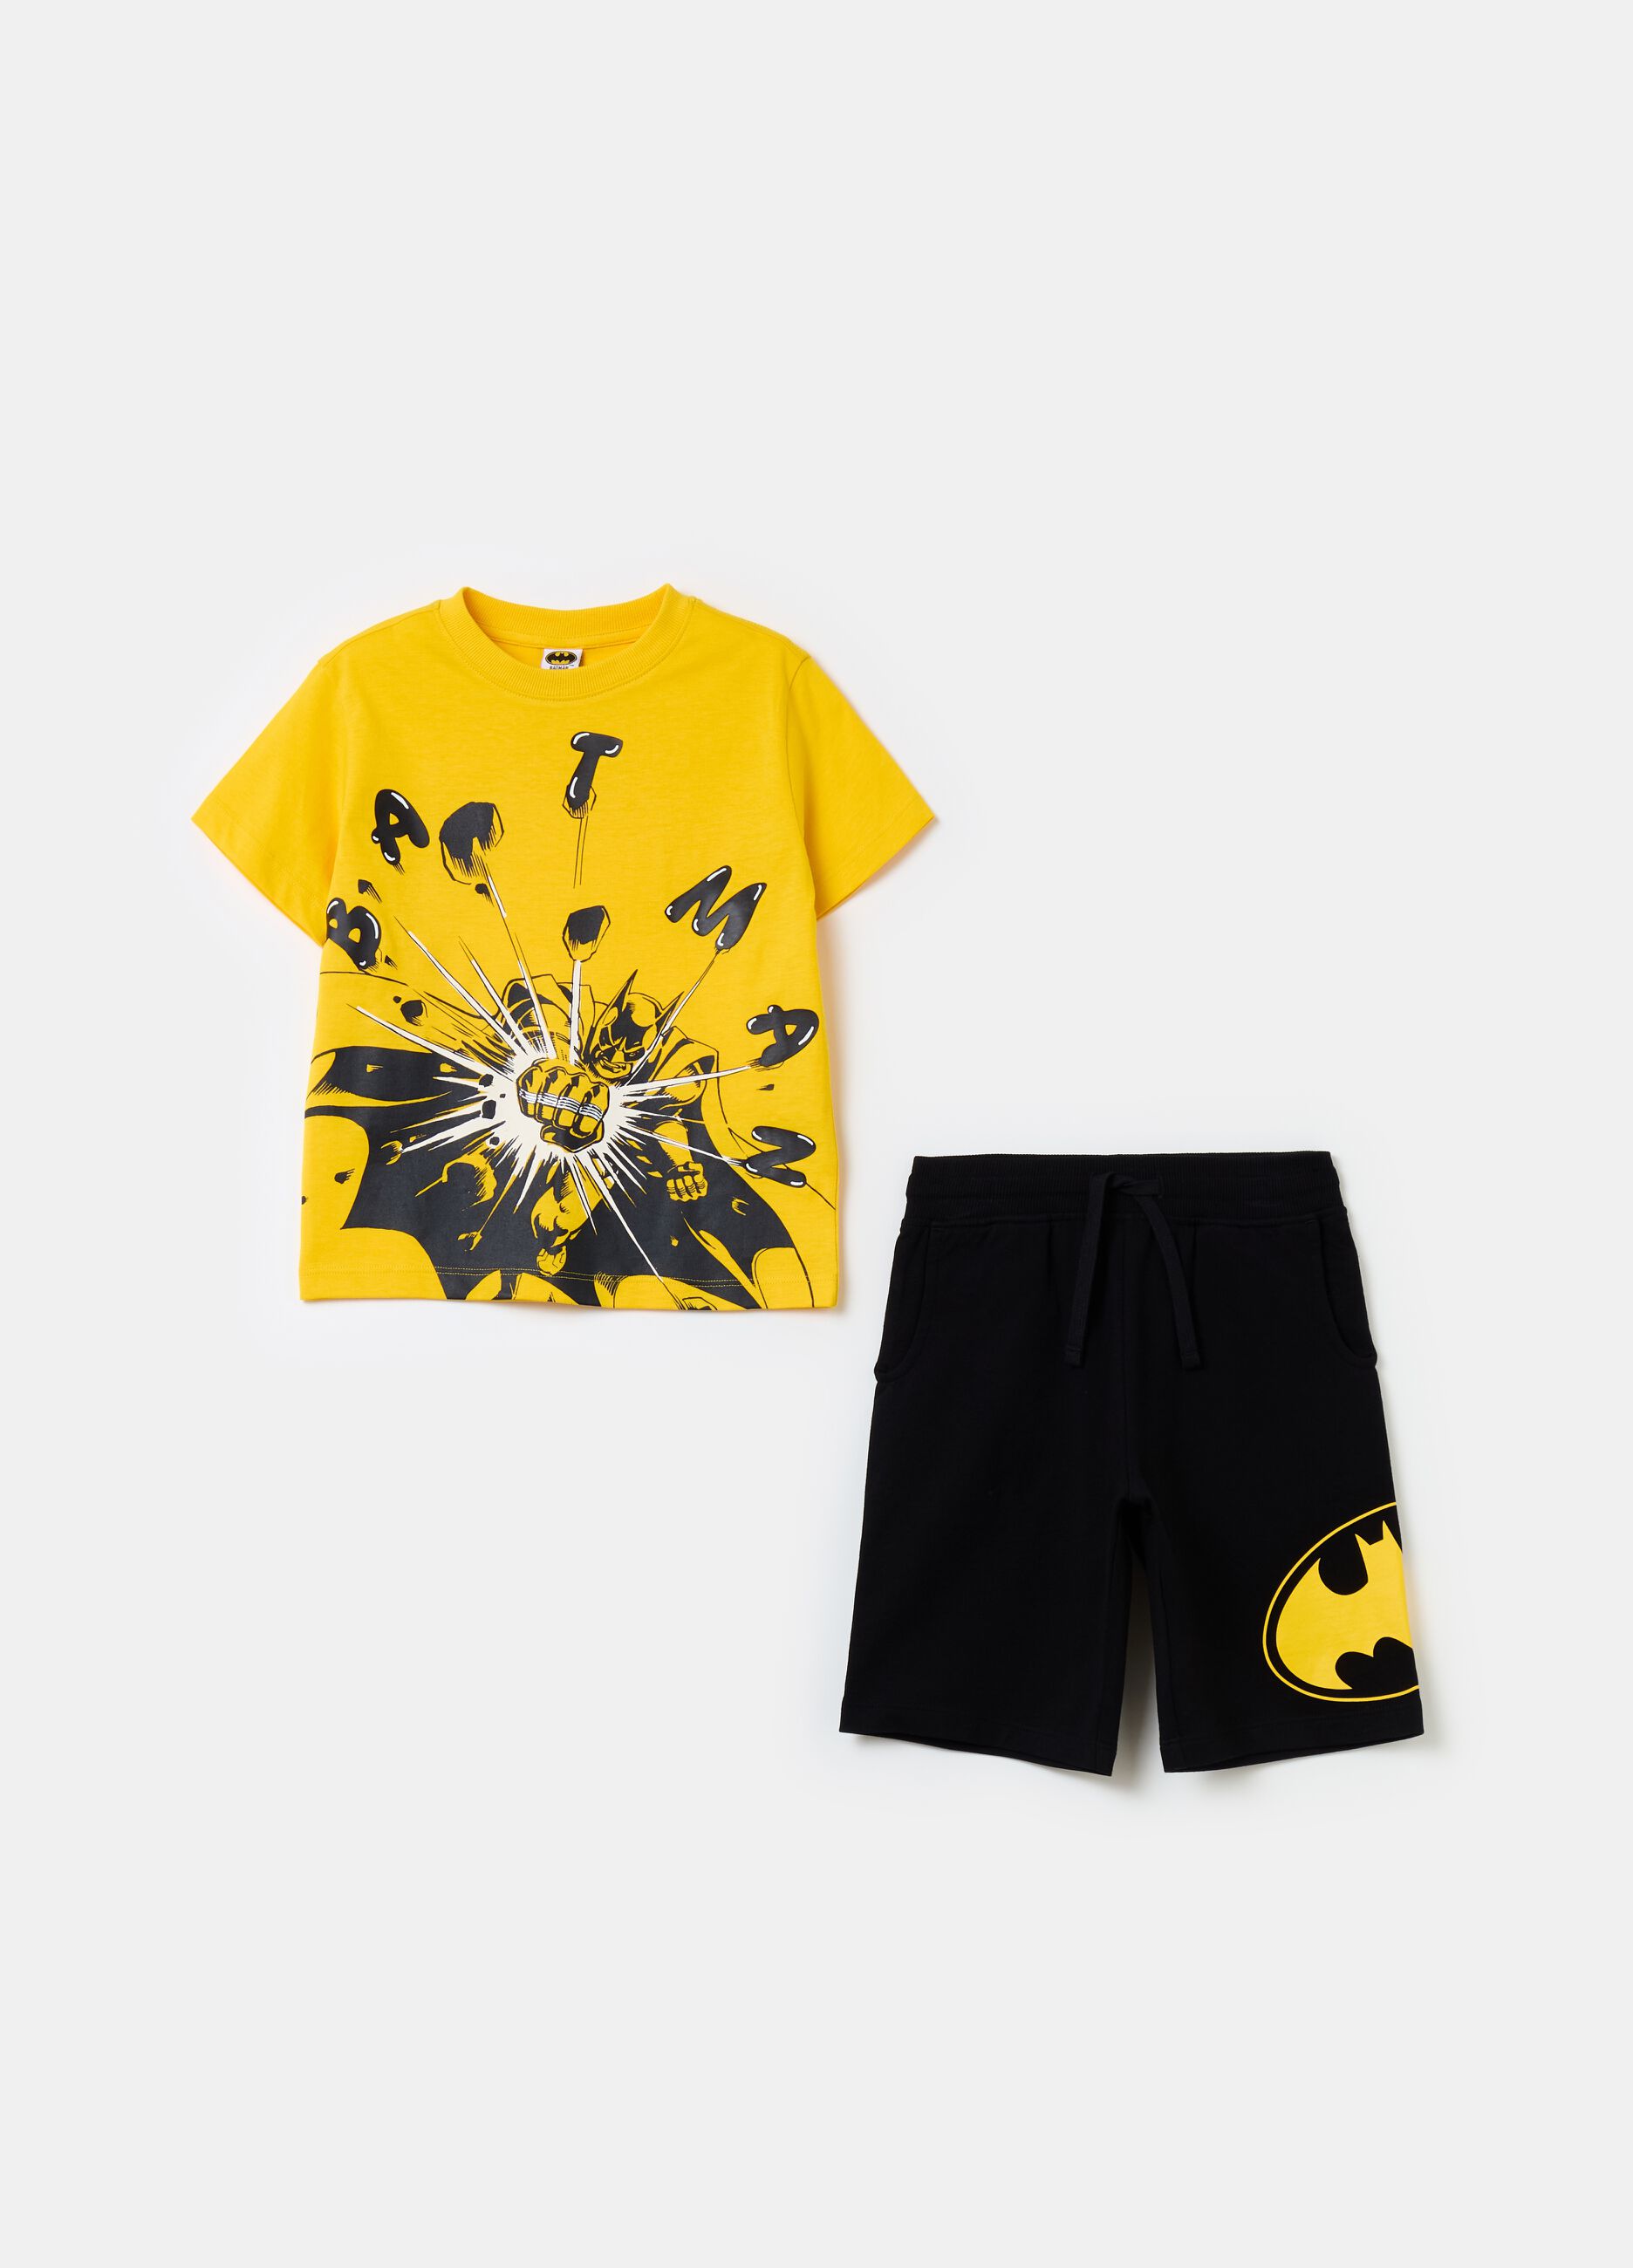 Cotton jogging set with Batman print